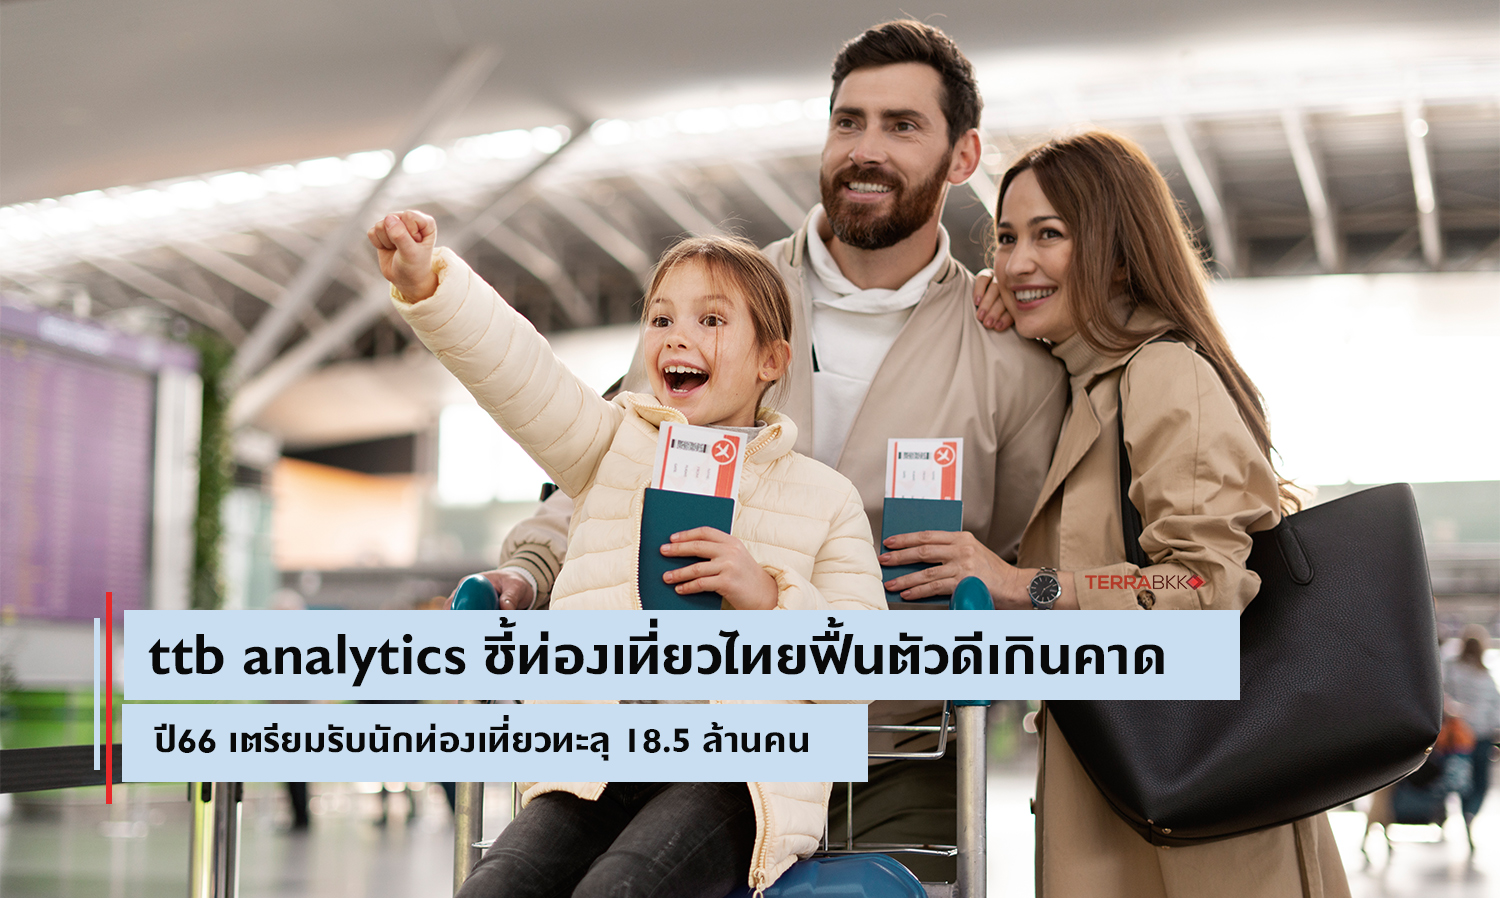 ttb analytics ชี้ท่องเที่ยวไทยฟื้นตัวดีเกินคาด ปี66 เตรียมรับนักท่องเที่ยว 18.5 ล้านคน